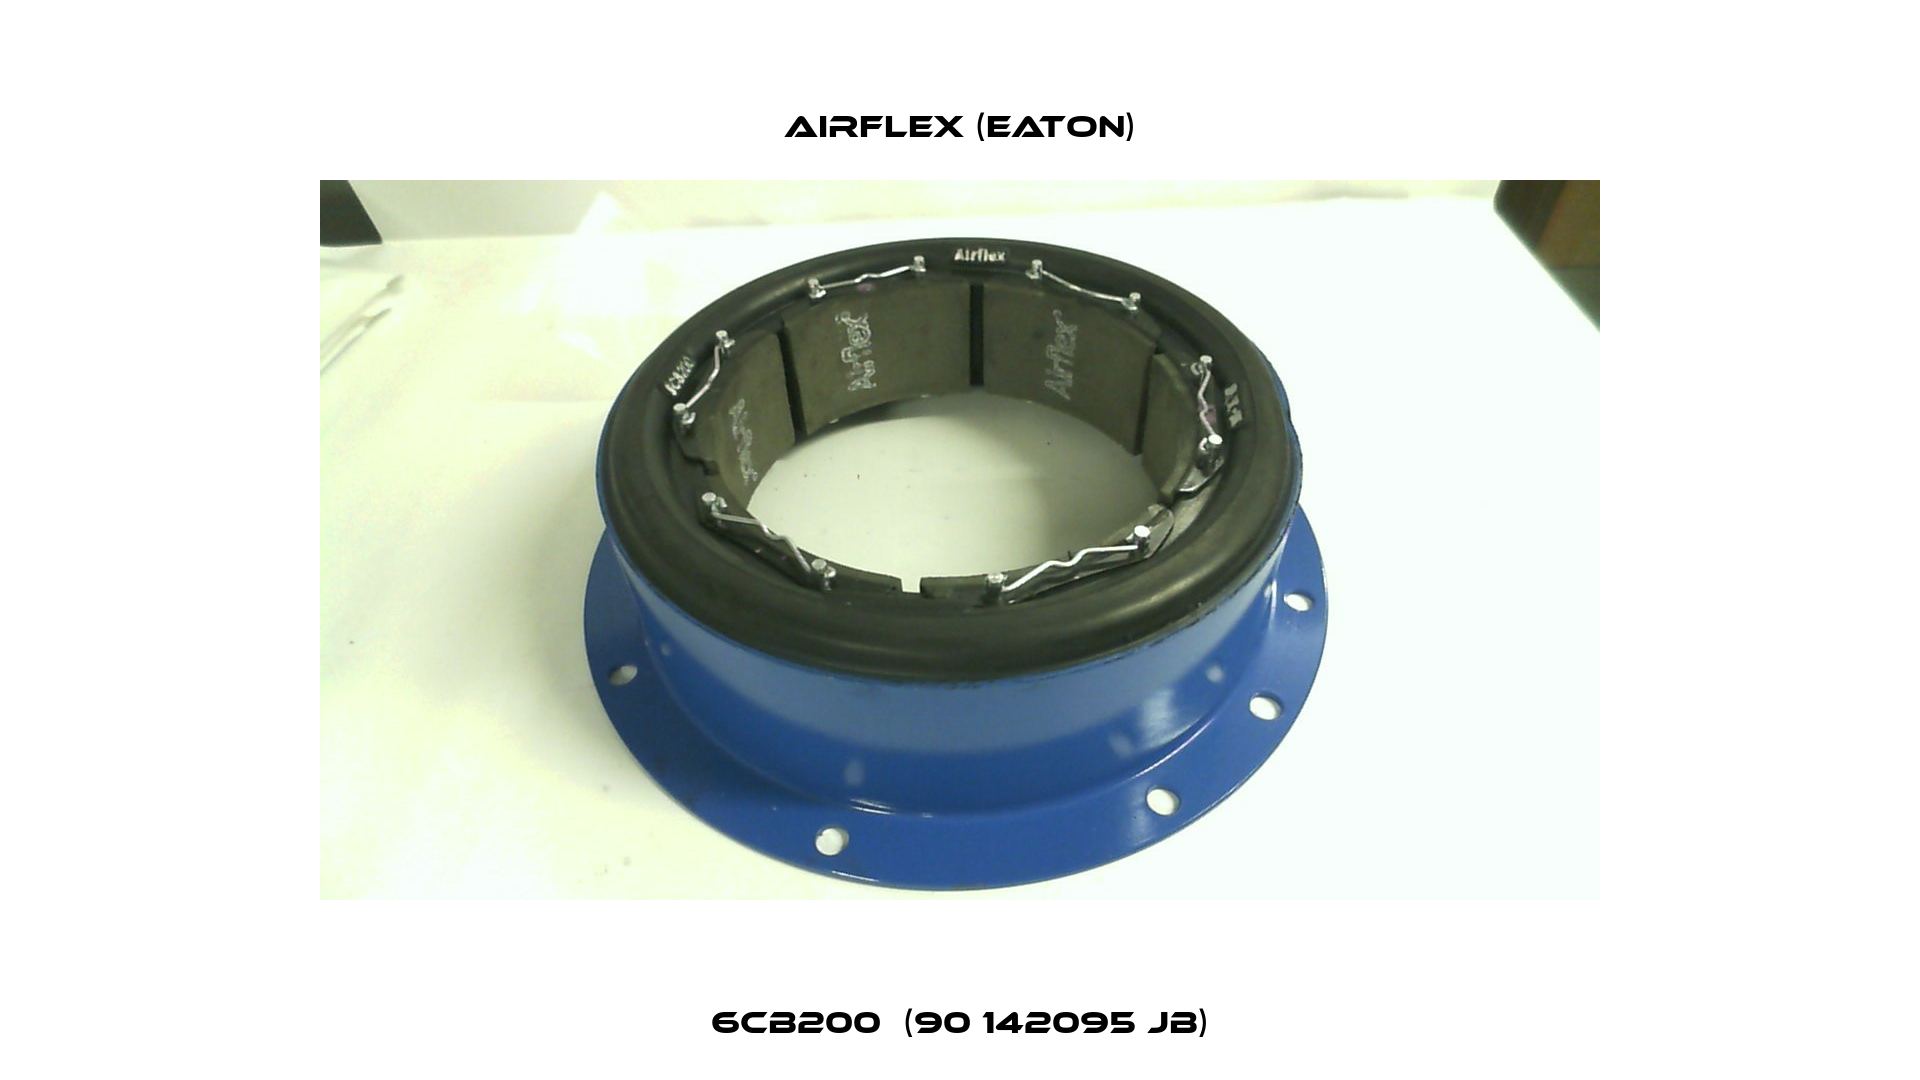 6CB200  (90 142095 JB) Airflex (Eaton)